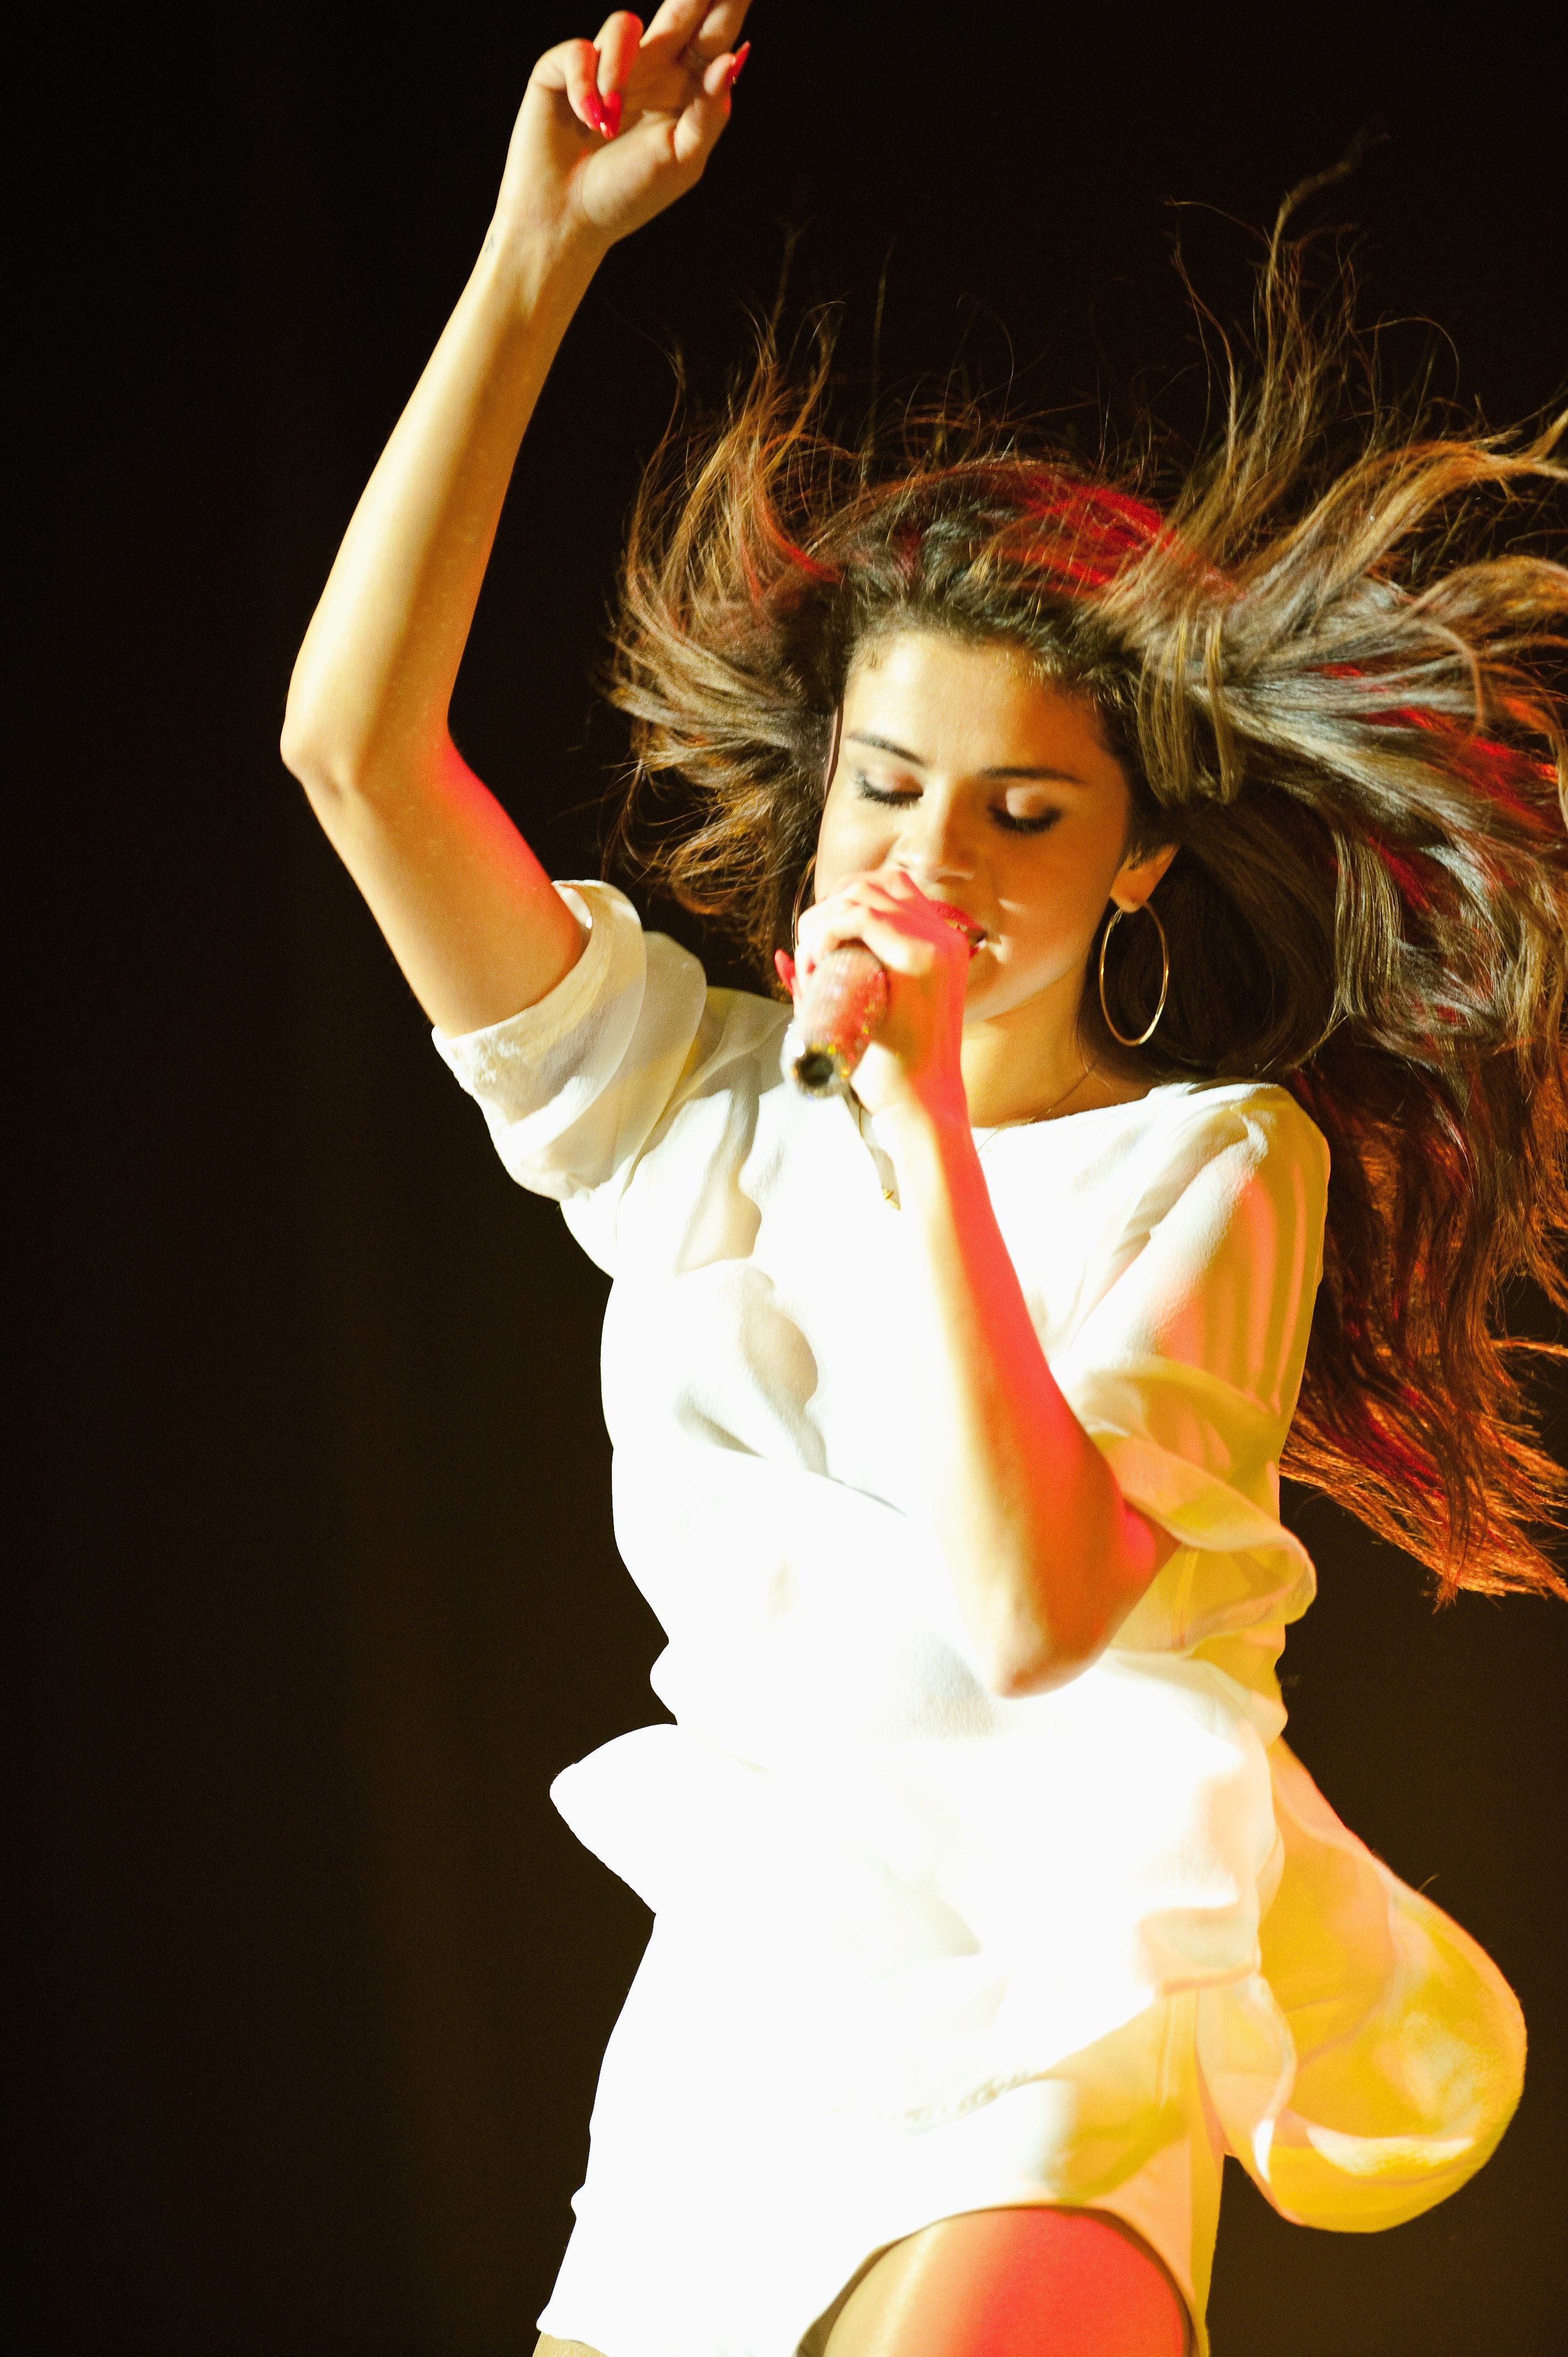 Selena Gomez in Stars Dance Tour